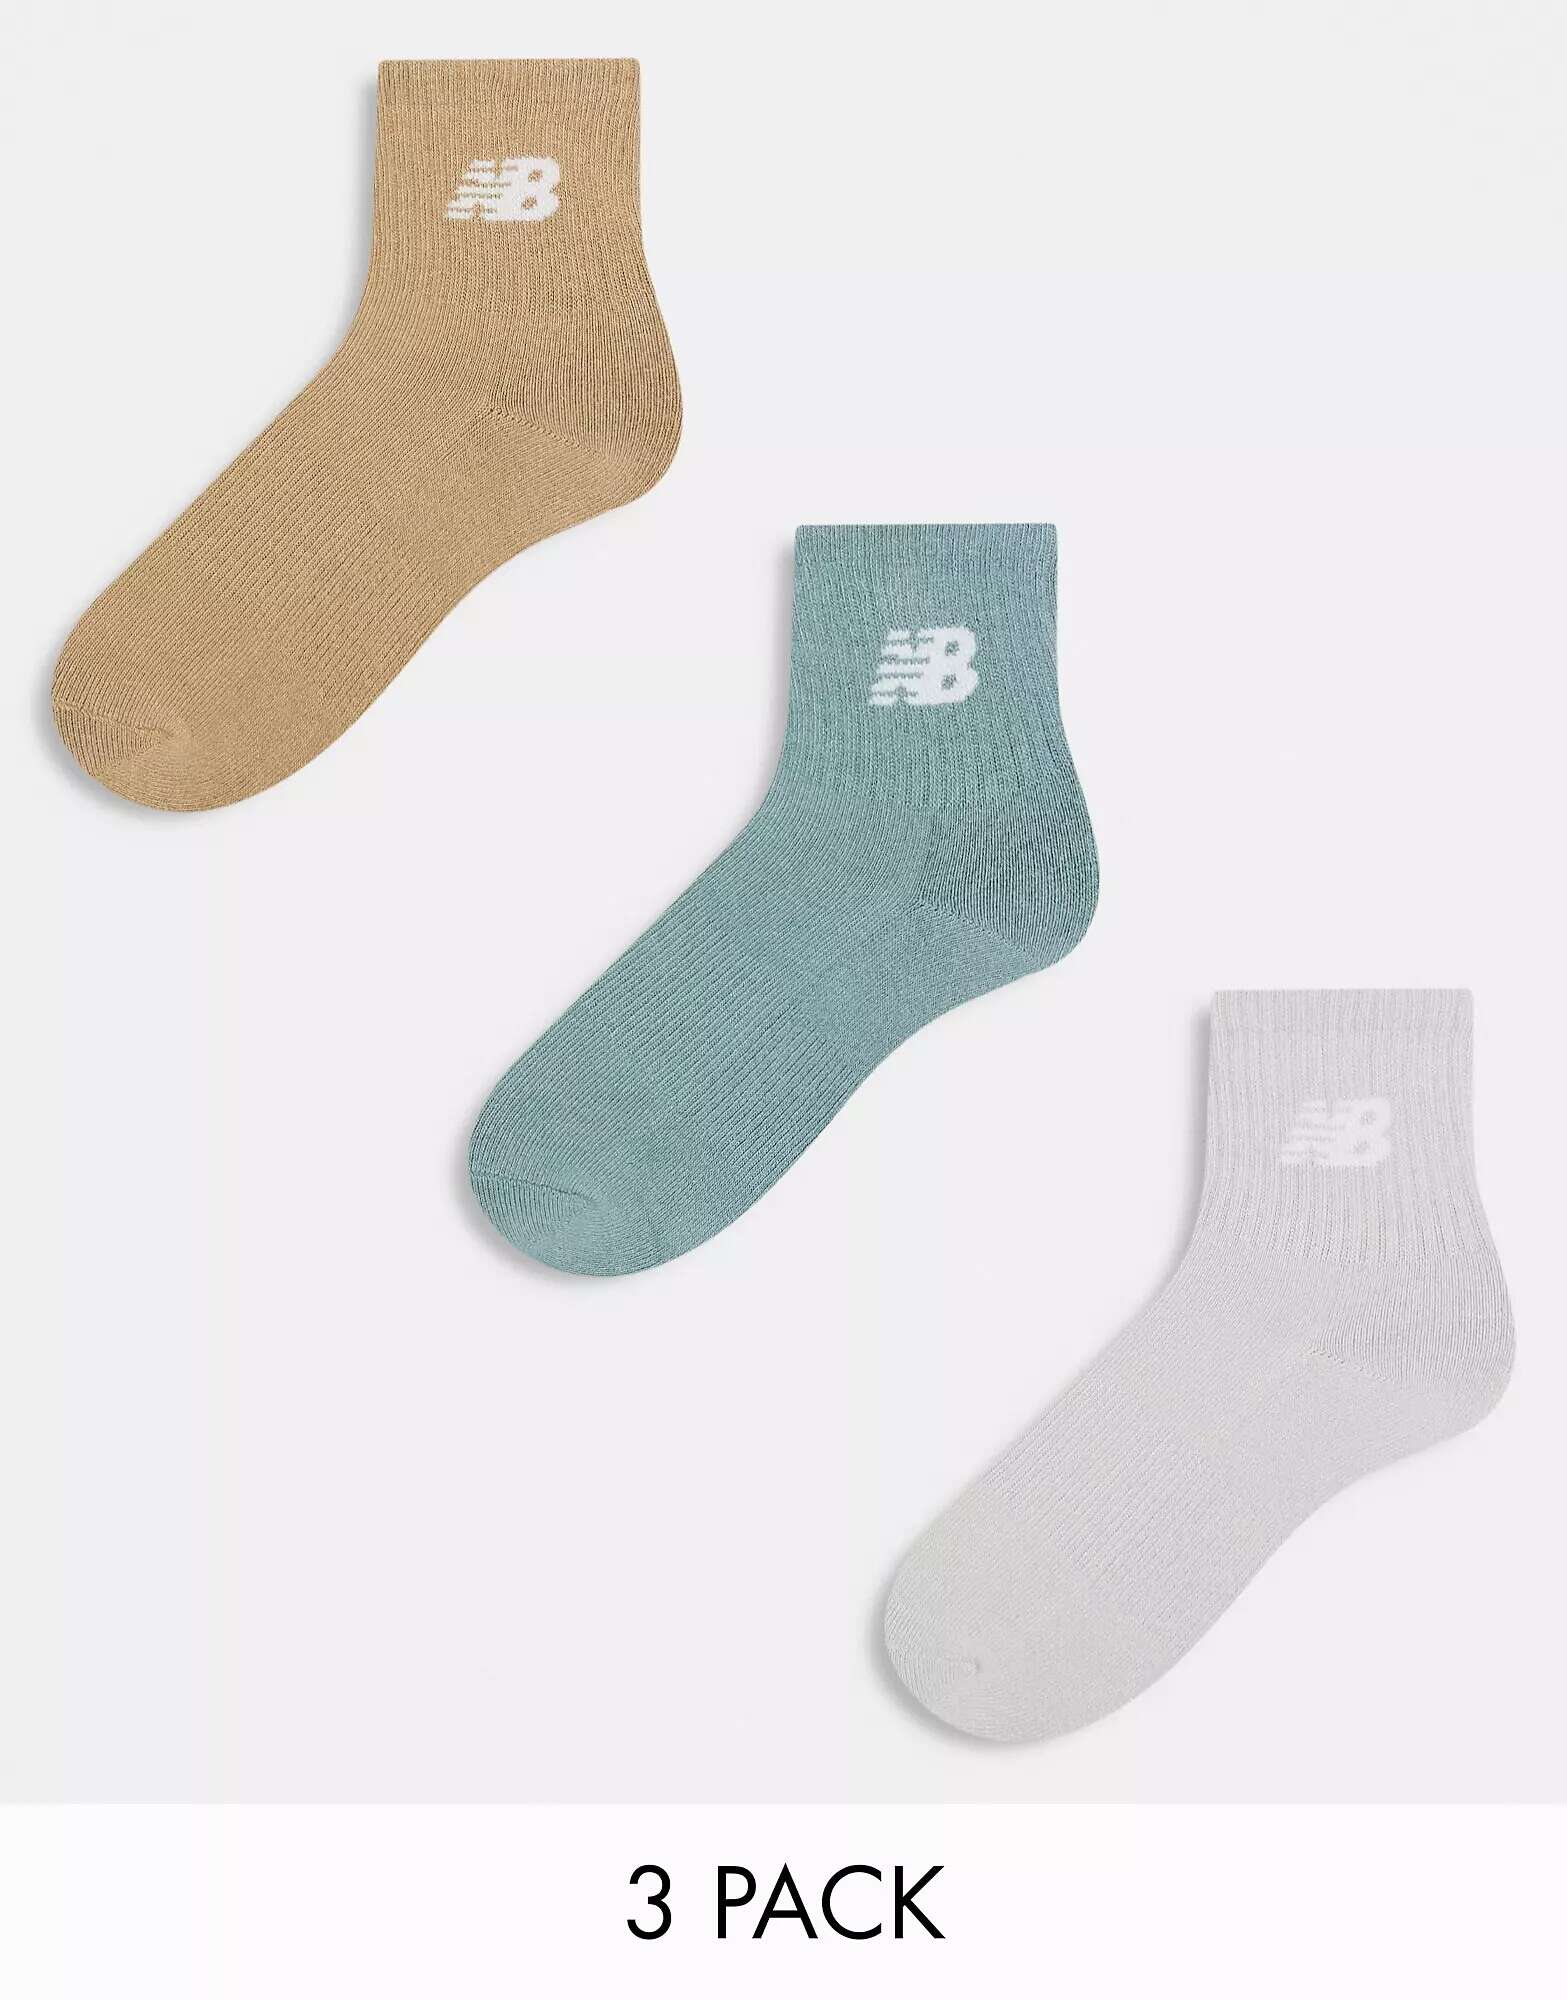 Три пары спортивных носков с логотипом New Balance зеленого, серого и коричневого цветов